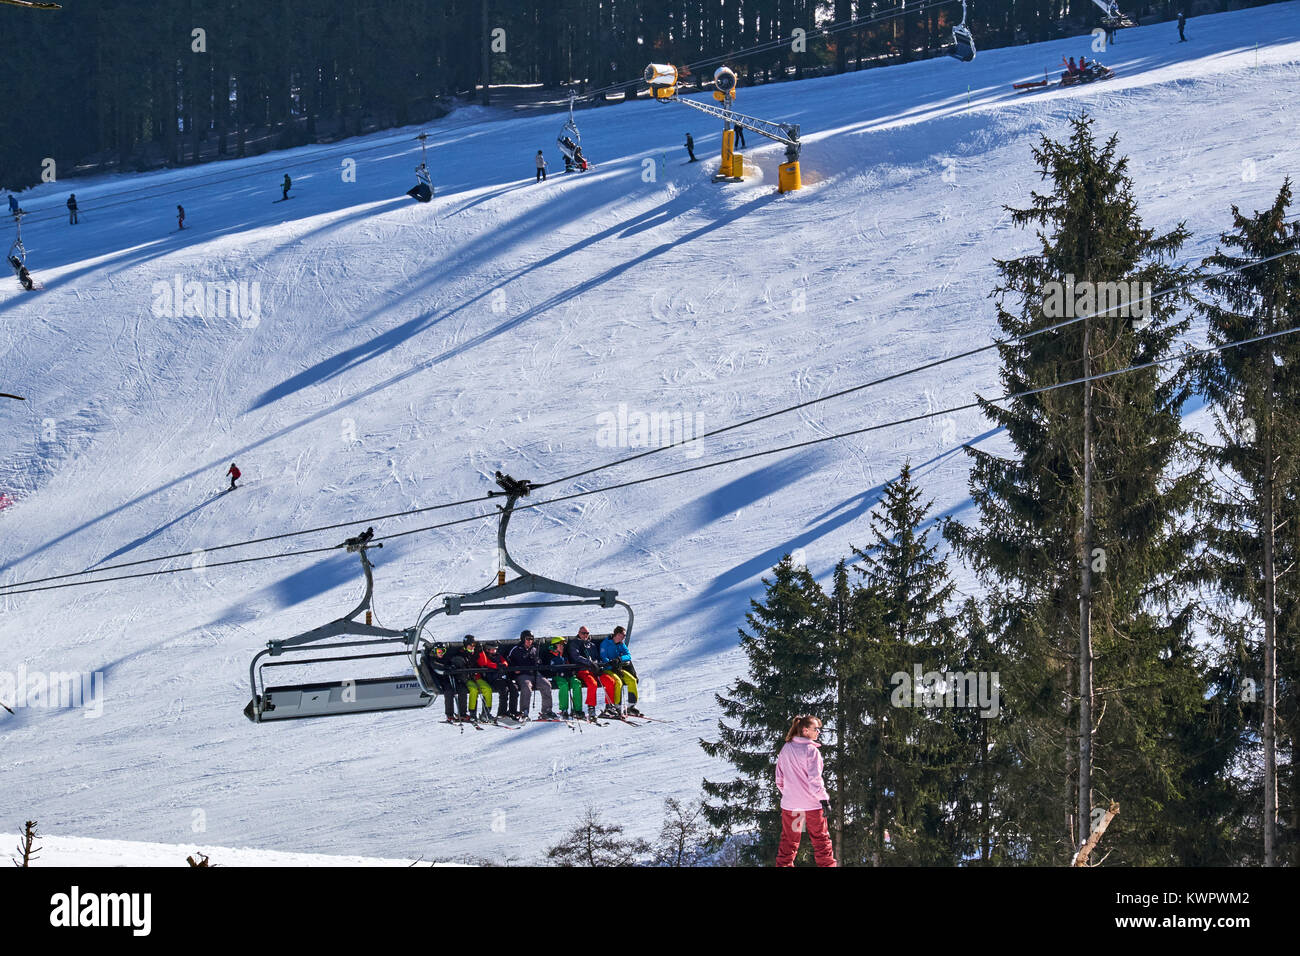 WINTERBERG, Germania - 15 febbraio 2017: seggiovia che gravano su di un tracciato di sci al carosello sciistico Winterberg Foto Stock